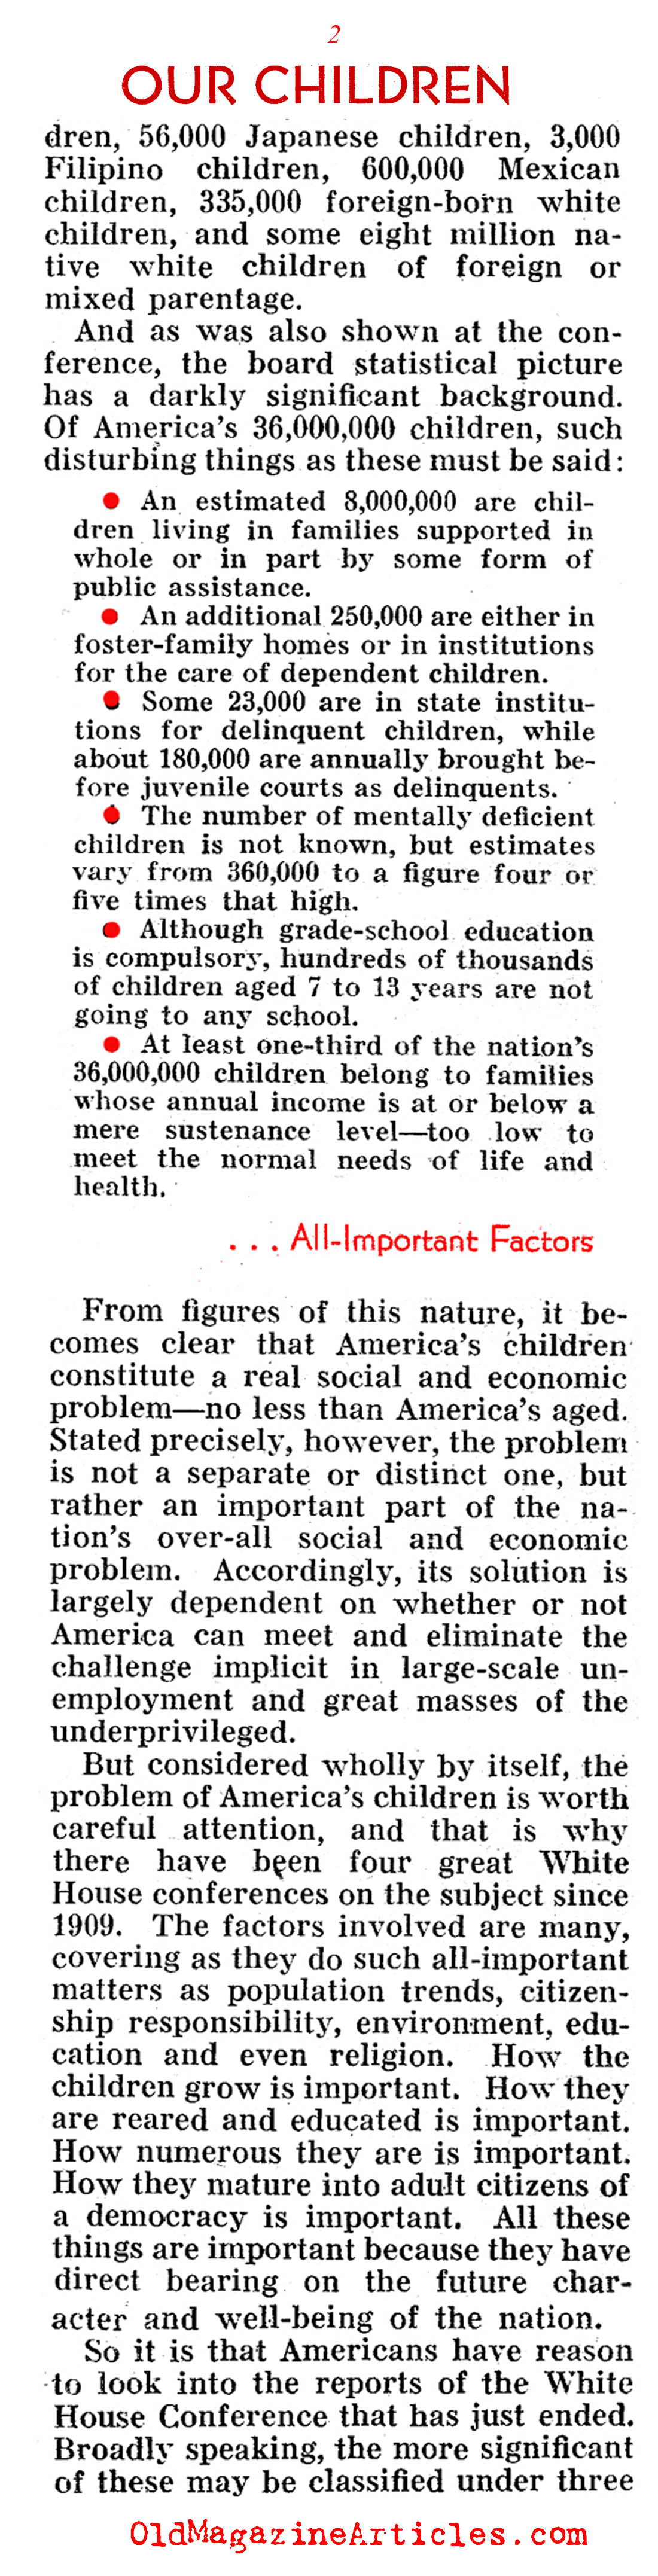 Children in Need (Pathfinder Magazine, 1940)